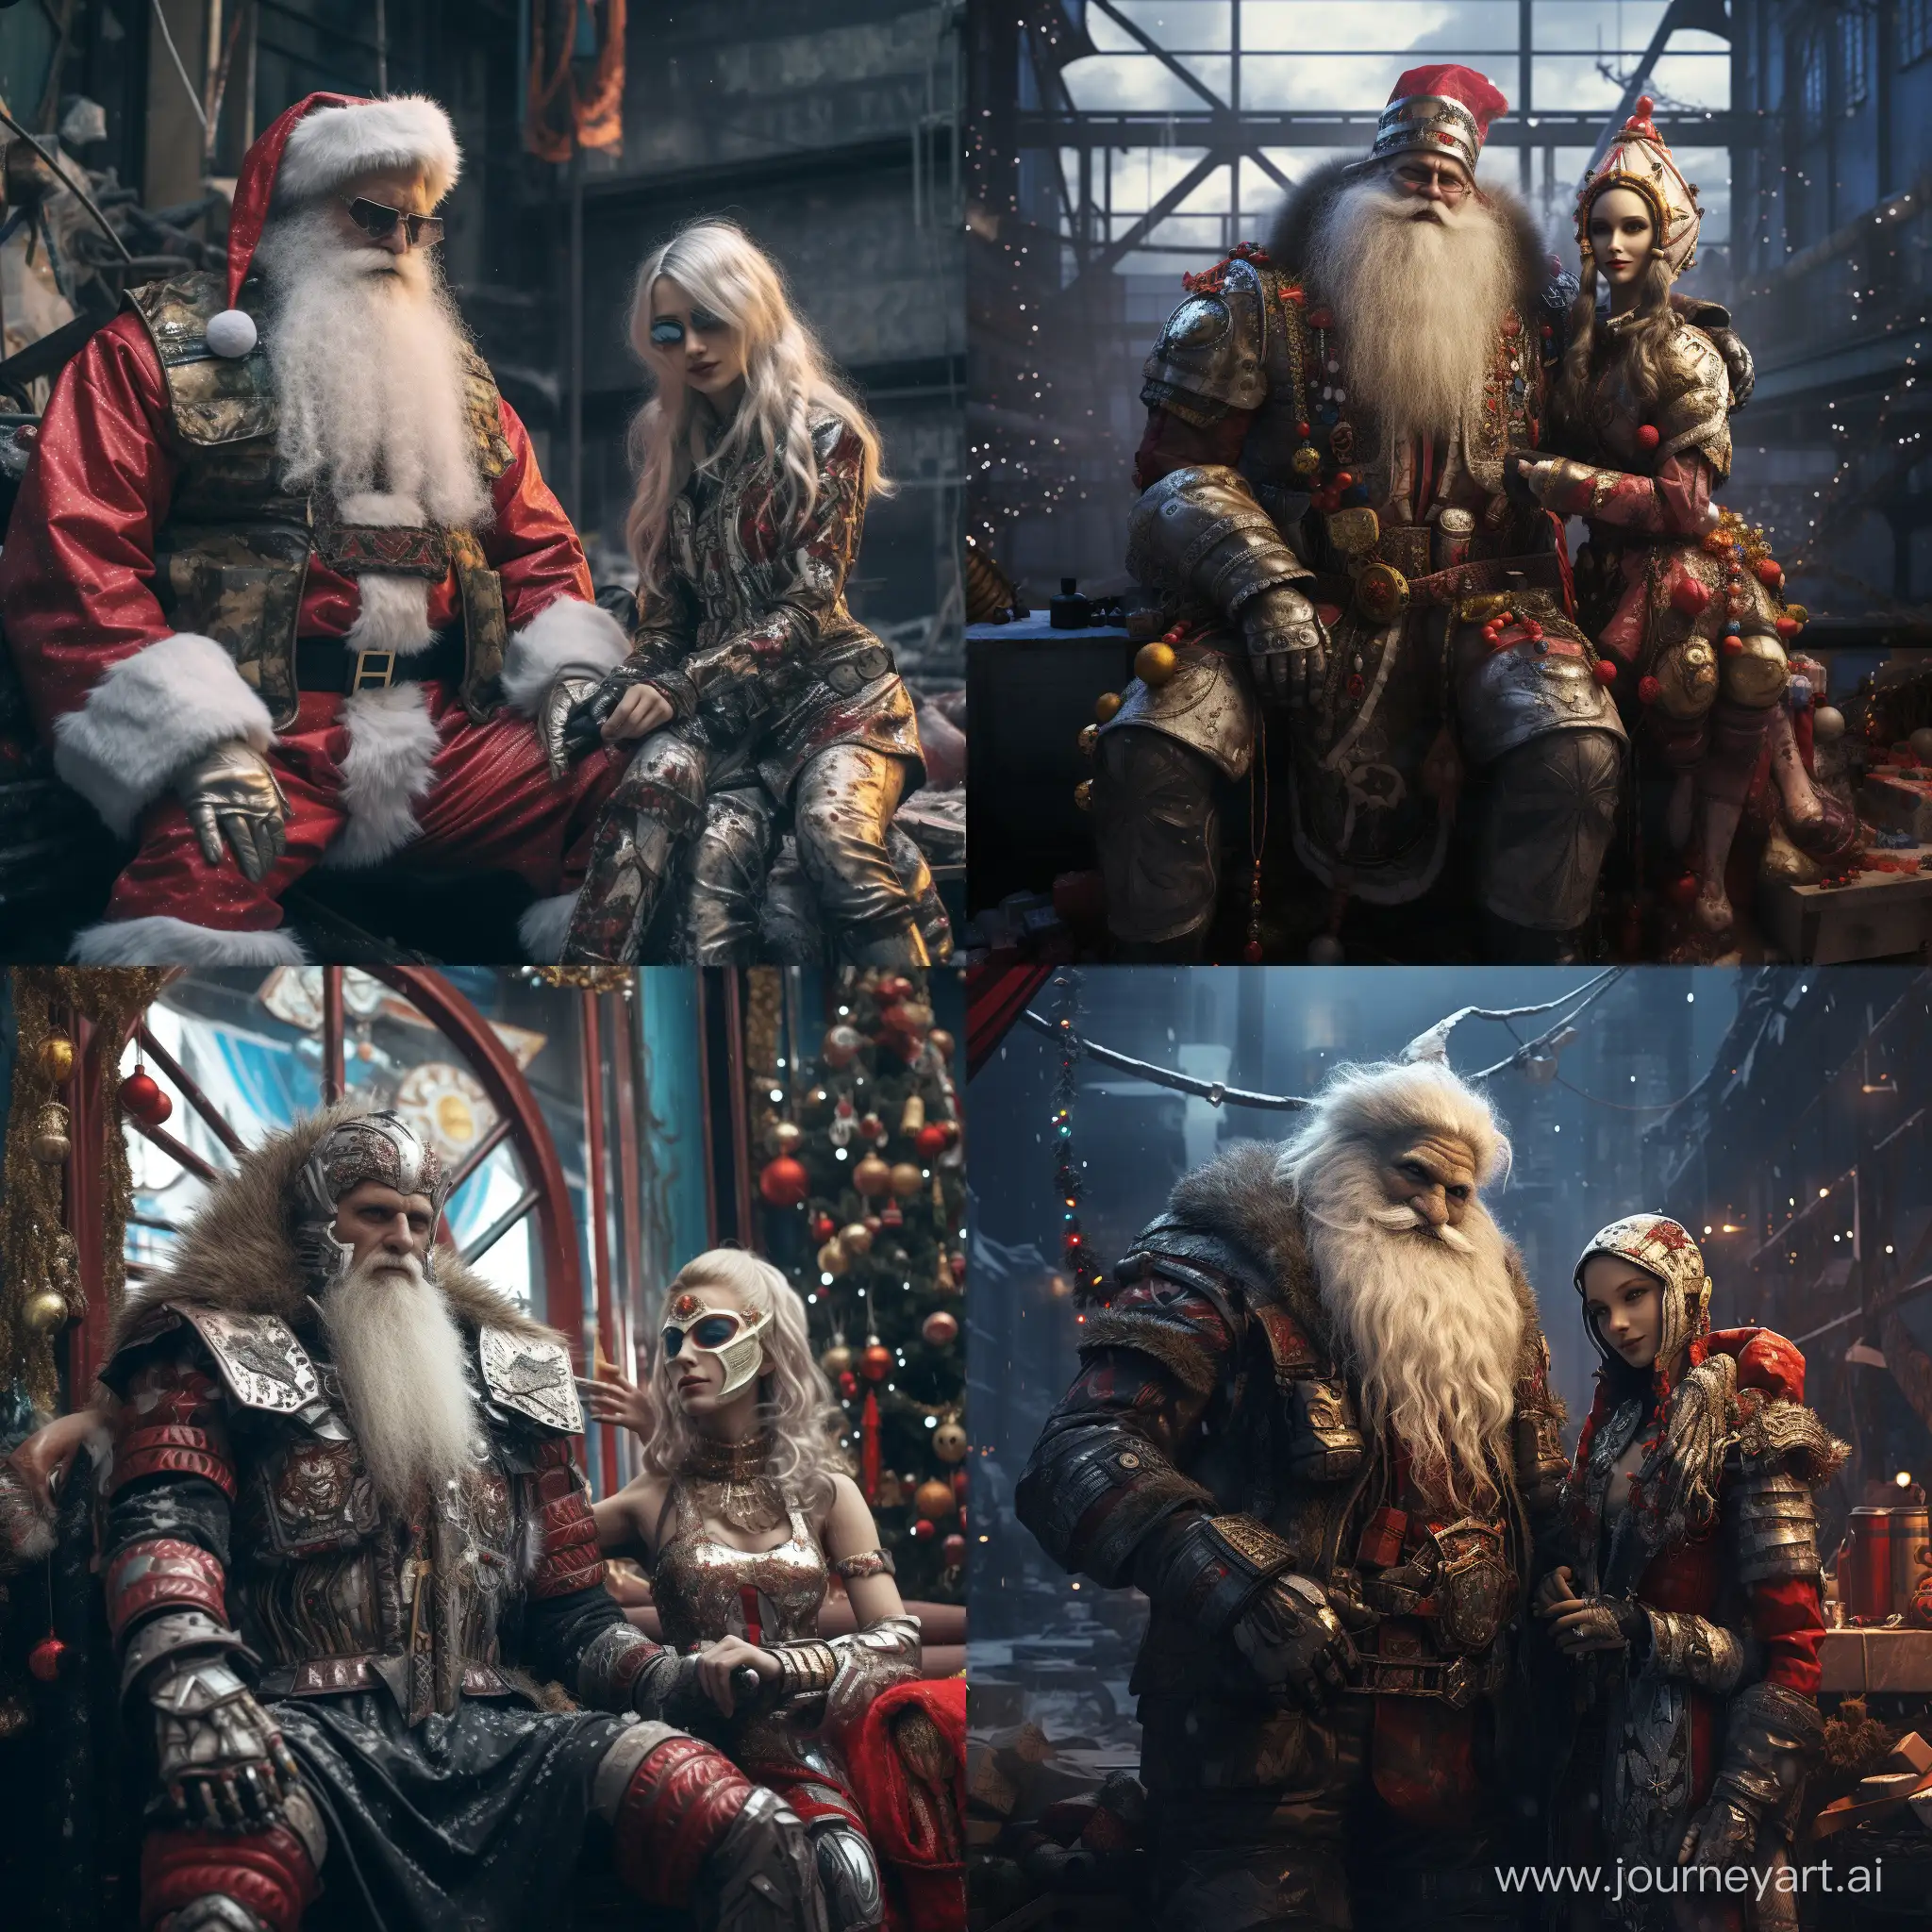 Дед Мороз и Снегурочка, одетые в стиле киберпанк, привезли подарки к странно наряженной новогодней ёлке стоящей в постапокалиптическом городе. высокохудожественный арт.